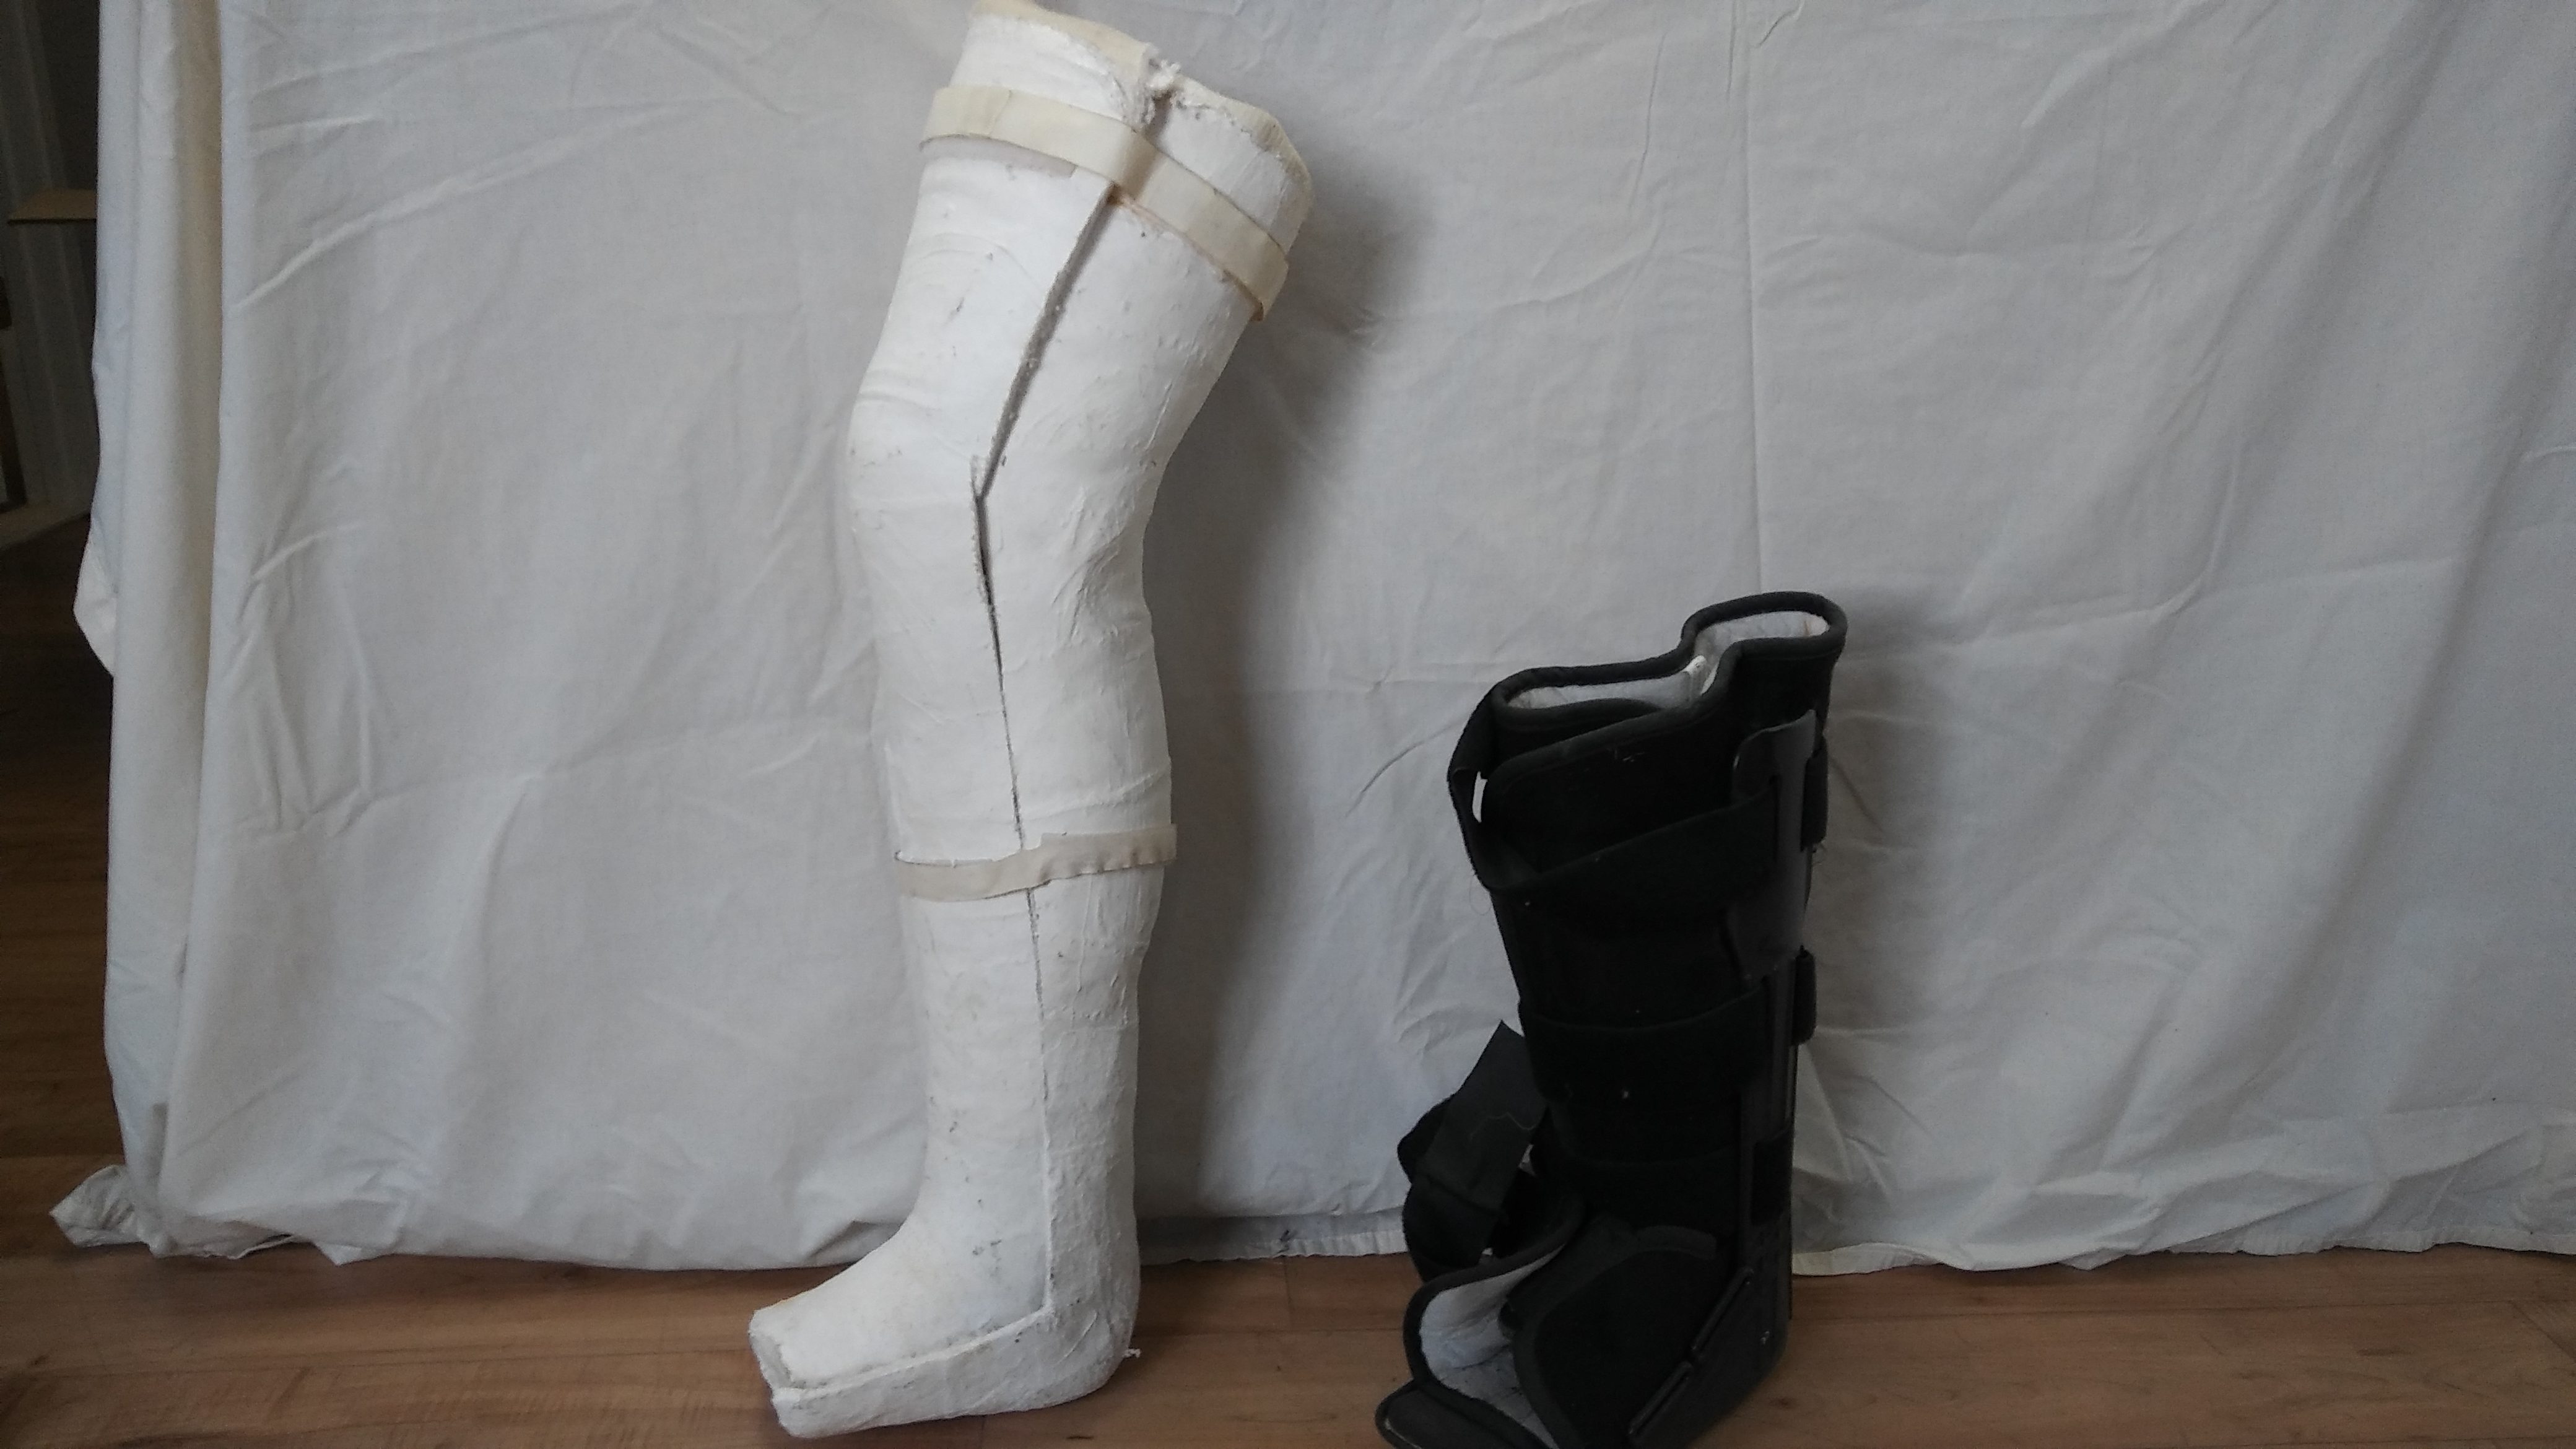 cast & medical boot